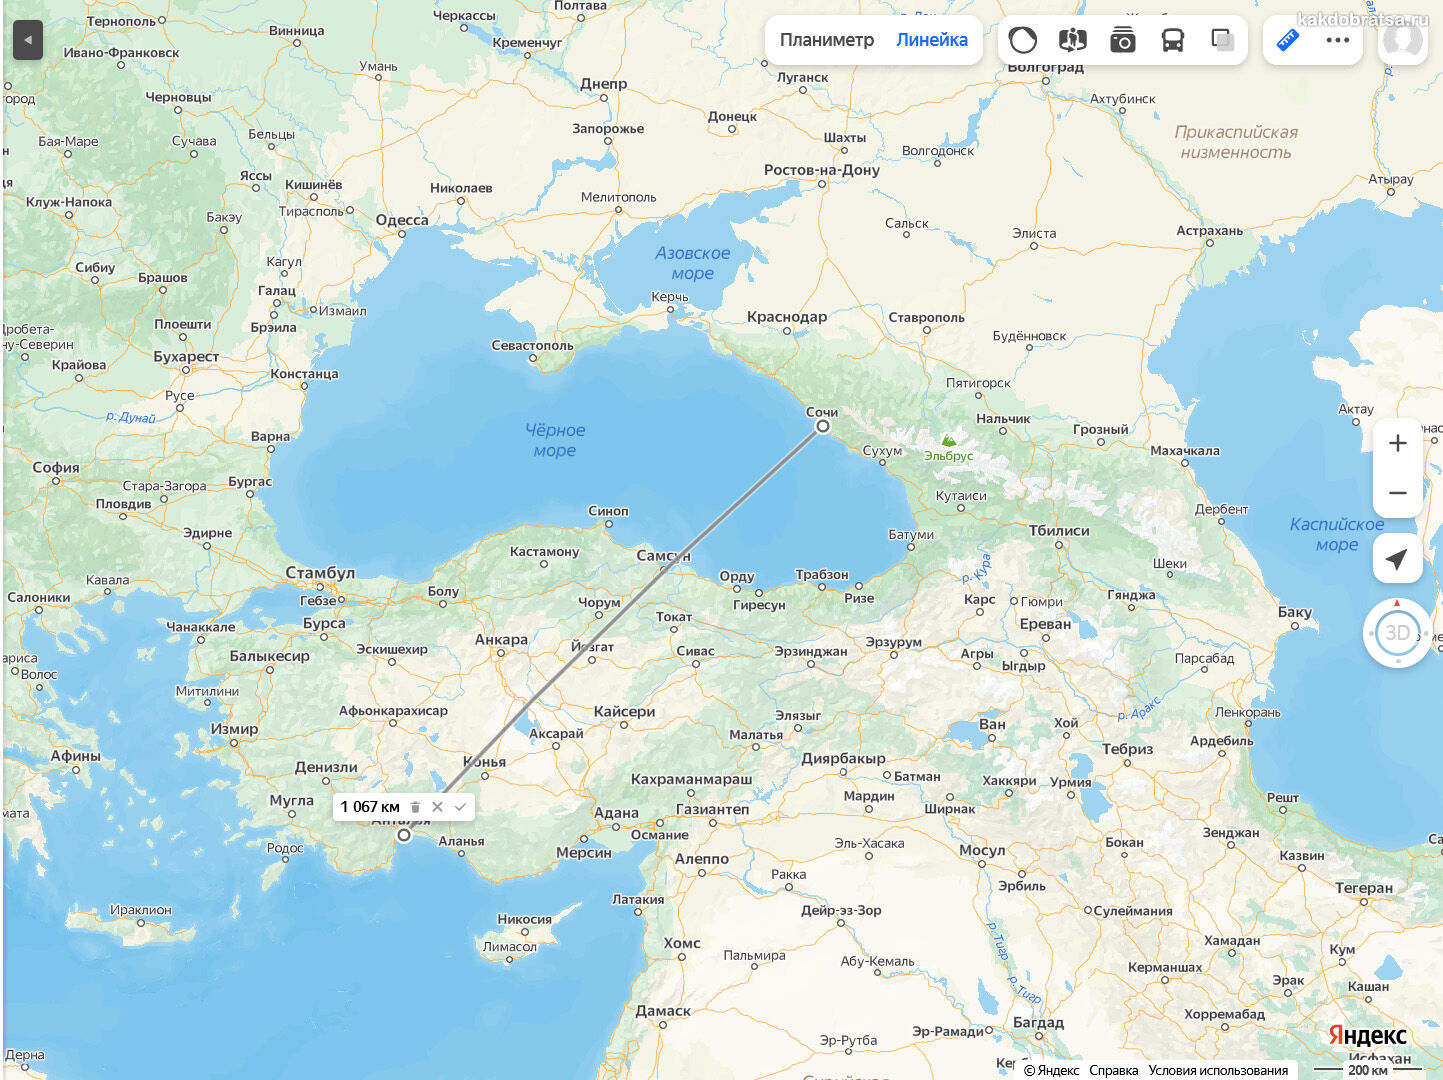 Расстояние между Сочи и Анталией по карте в км